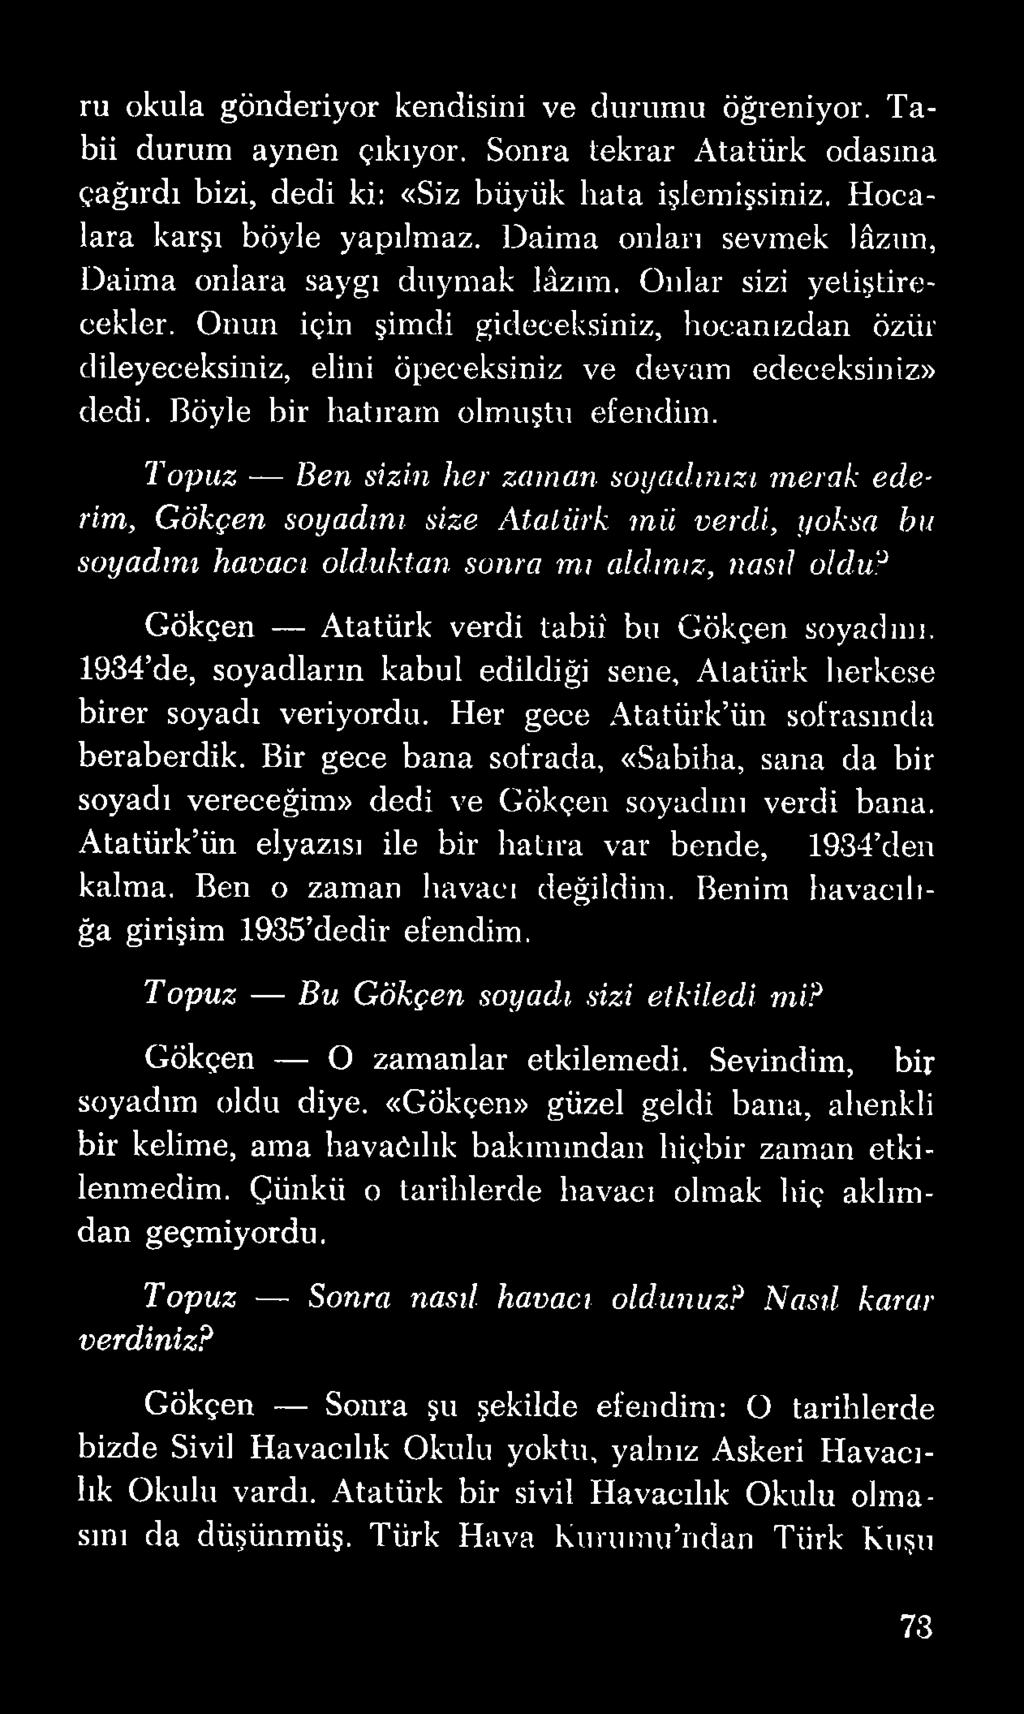 Bir gece bana sofrada, «Sabiha, sana da bir soyadı vereceğim» dedi ve Gökçen soyadını verdi bana. Atatürk ün elyazısı ile bir hatıra var bende, 1934 den kalma. Ben o zaman havacı değildim.